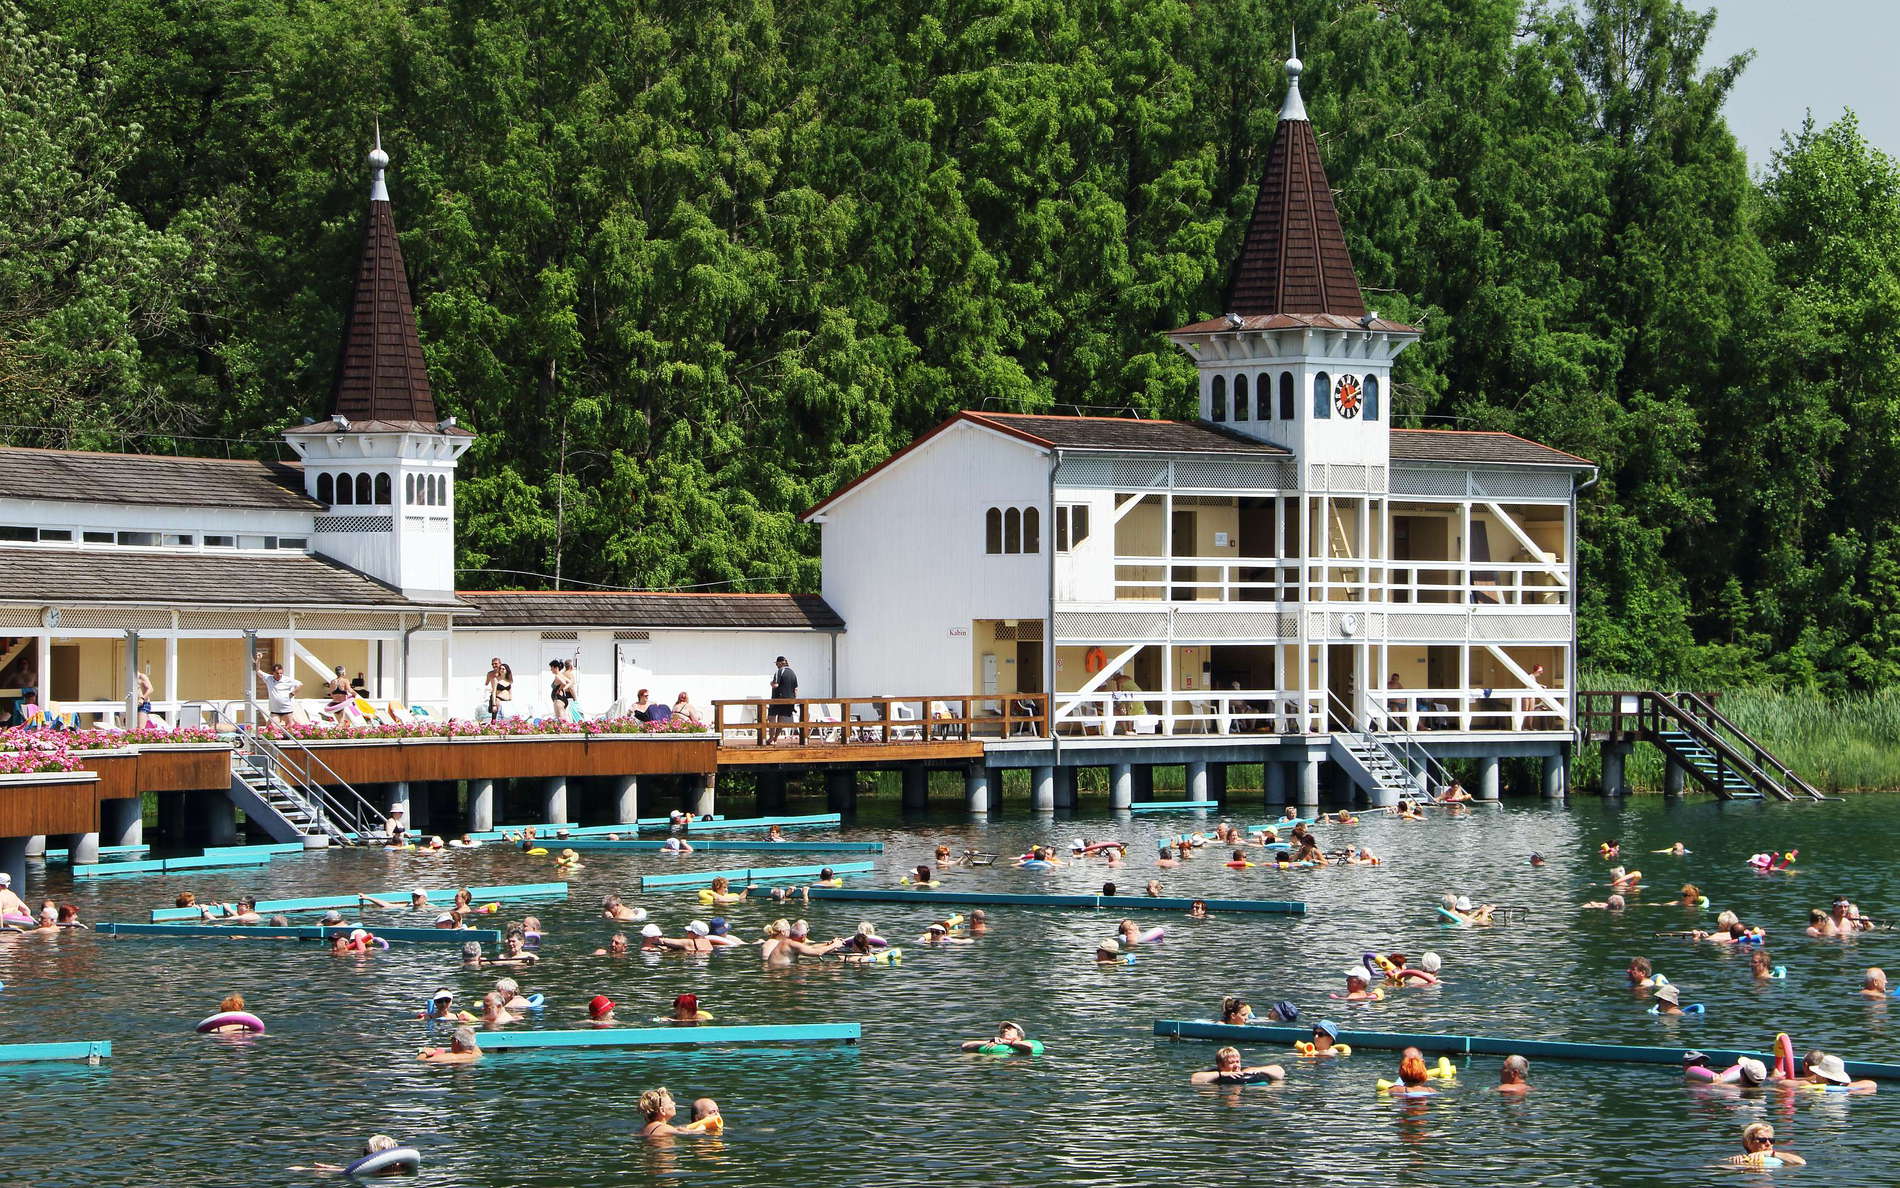 Hévízi-tó with Hévíz Spa